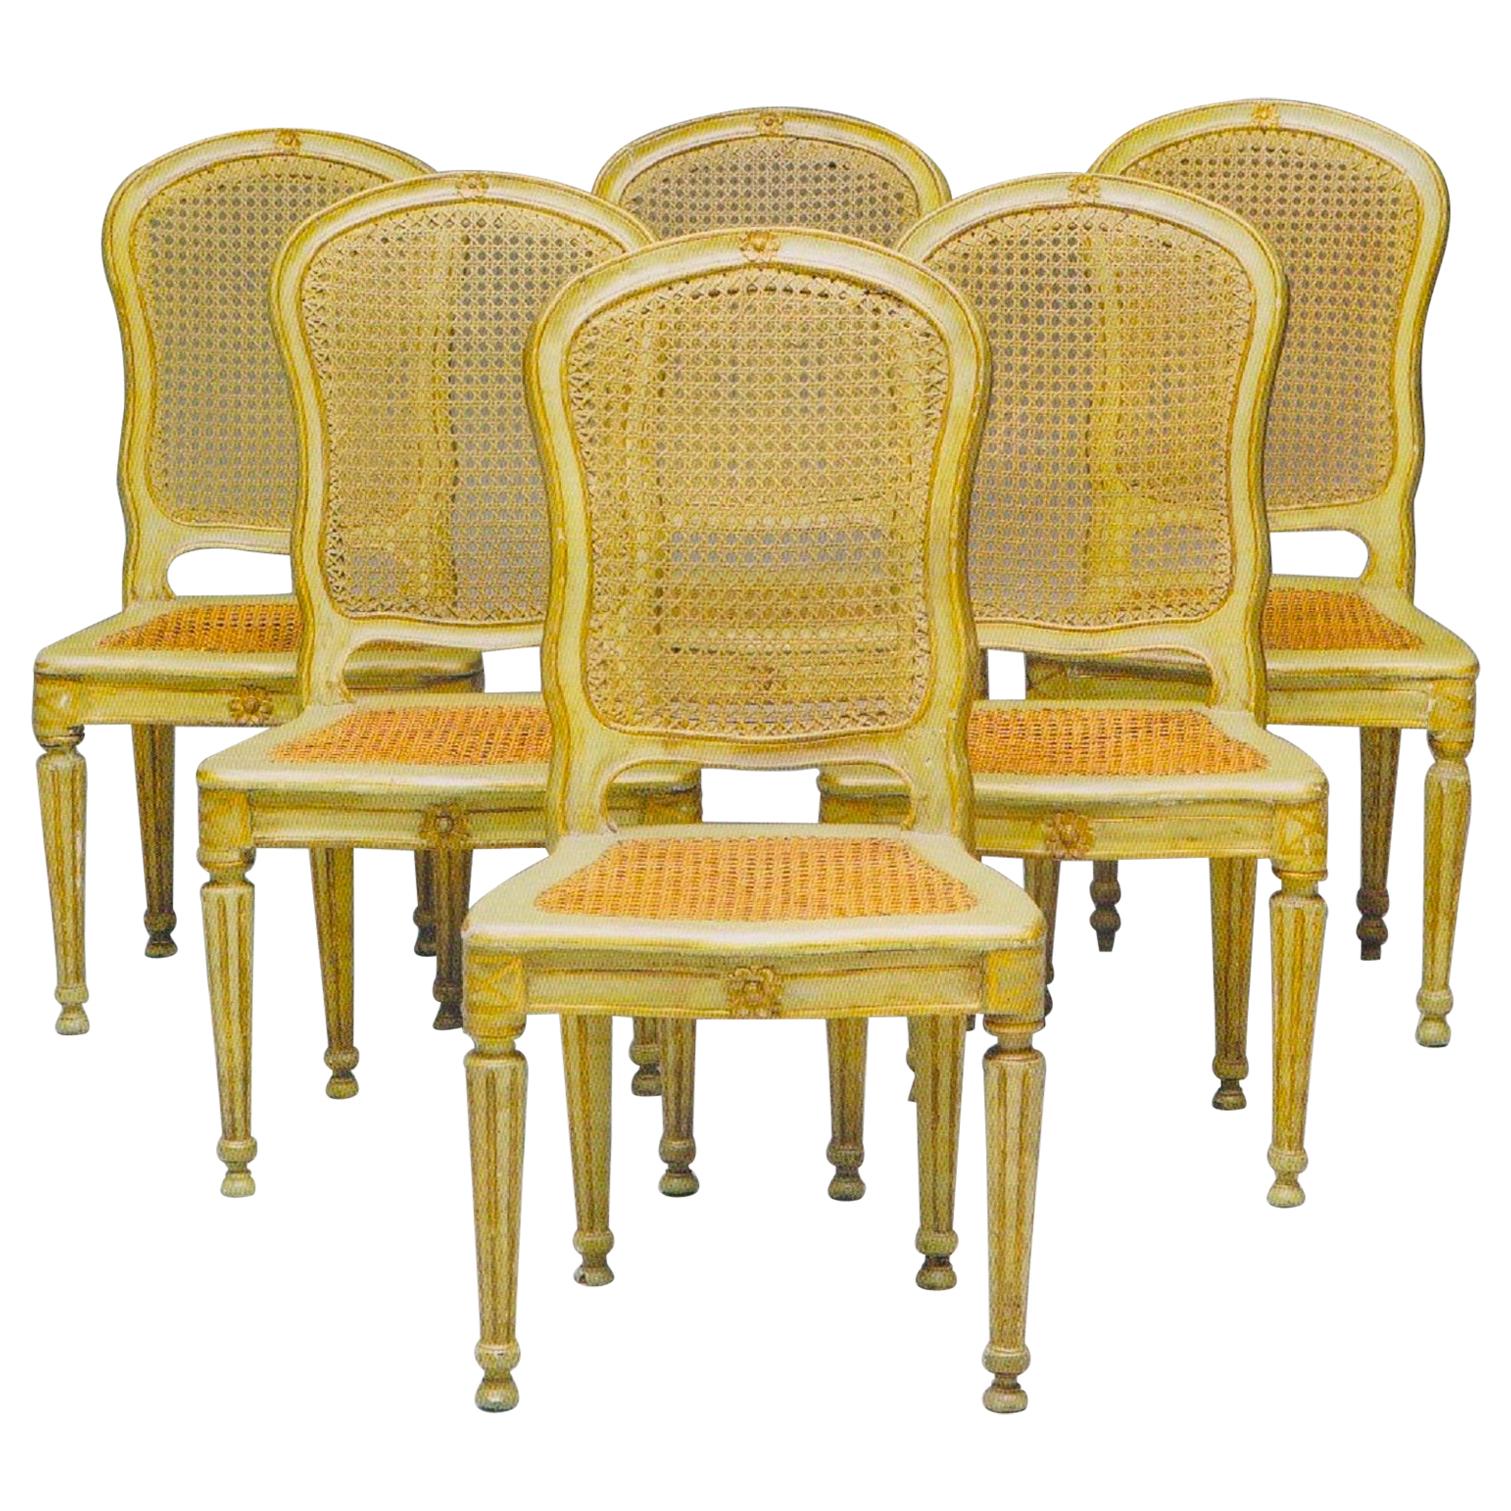 Ensemble de six chaises italiennes du 18ème siècle peintes et dorées à la feuille